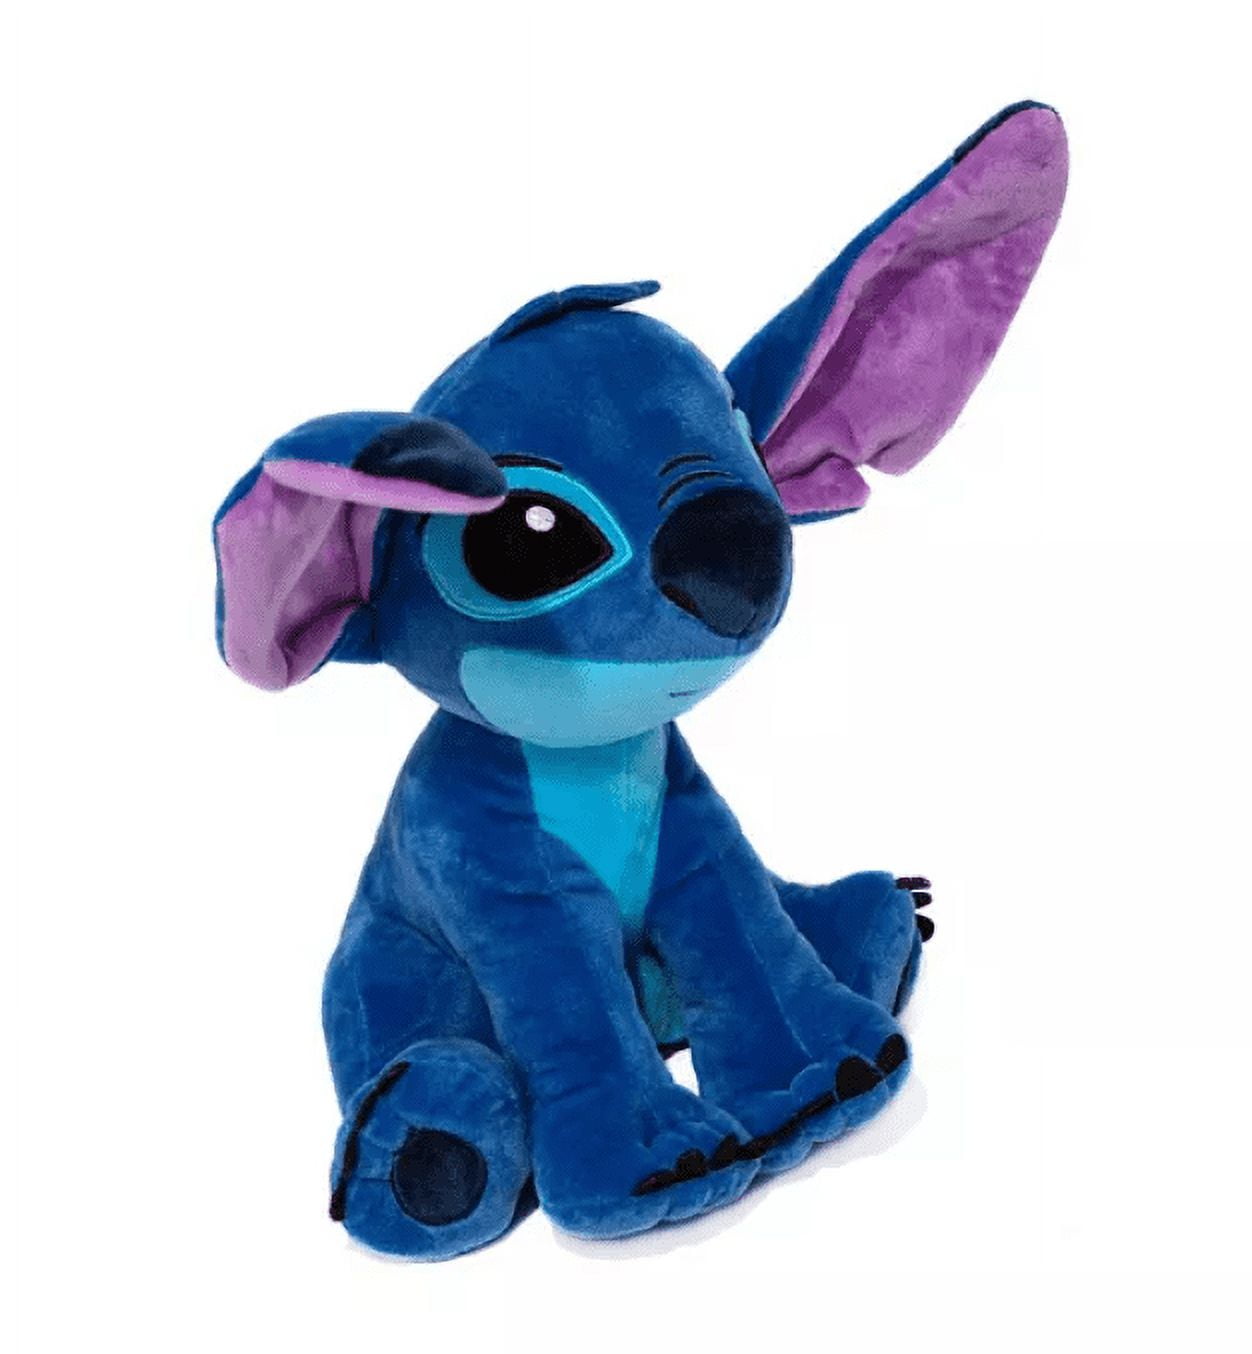 2pcs Stitch Plush Toys, 3.9 inch Blue and Pink Lilo & Stitch Stuffed Dolls, Blue Pink Stitch Gifts, Soft and Huggable, Stuffed Pillow Buddy, Stitch